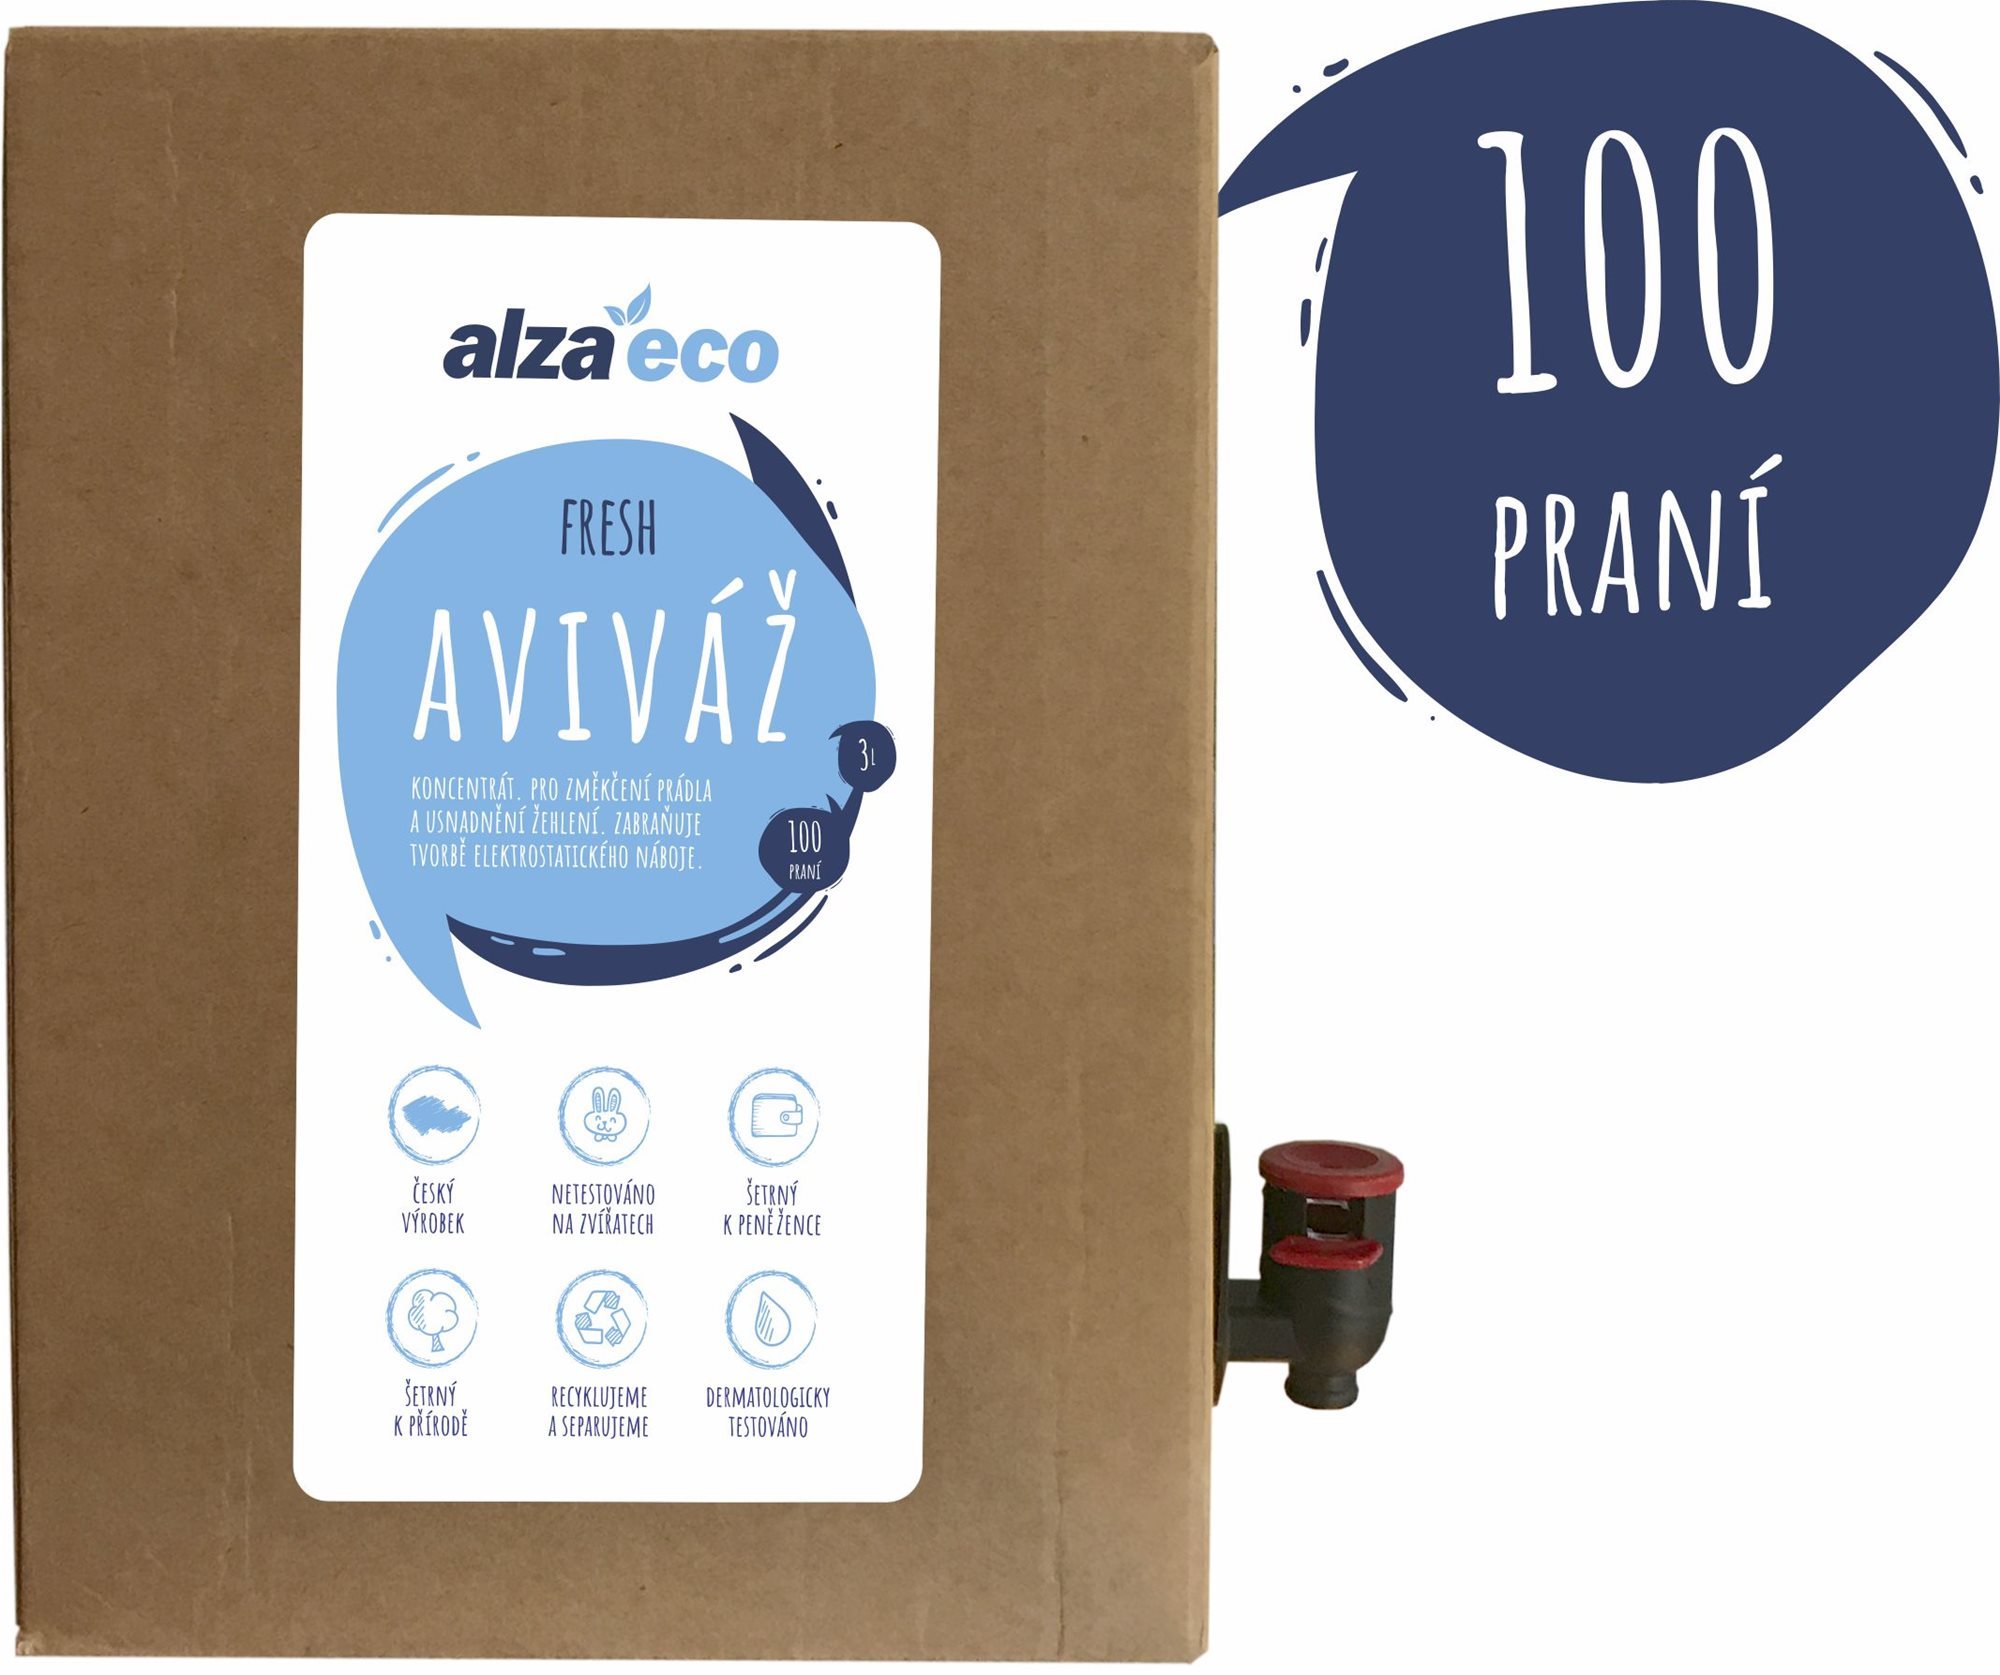 Öko öblítő AlzaEco Fresh öblítő 3 l (100 mosáshoz)